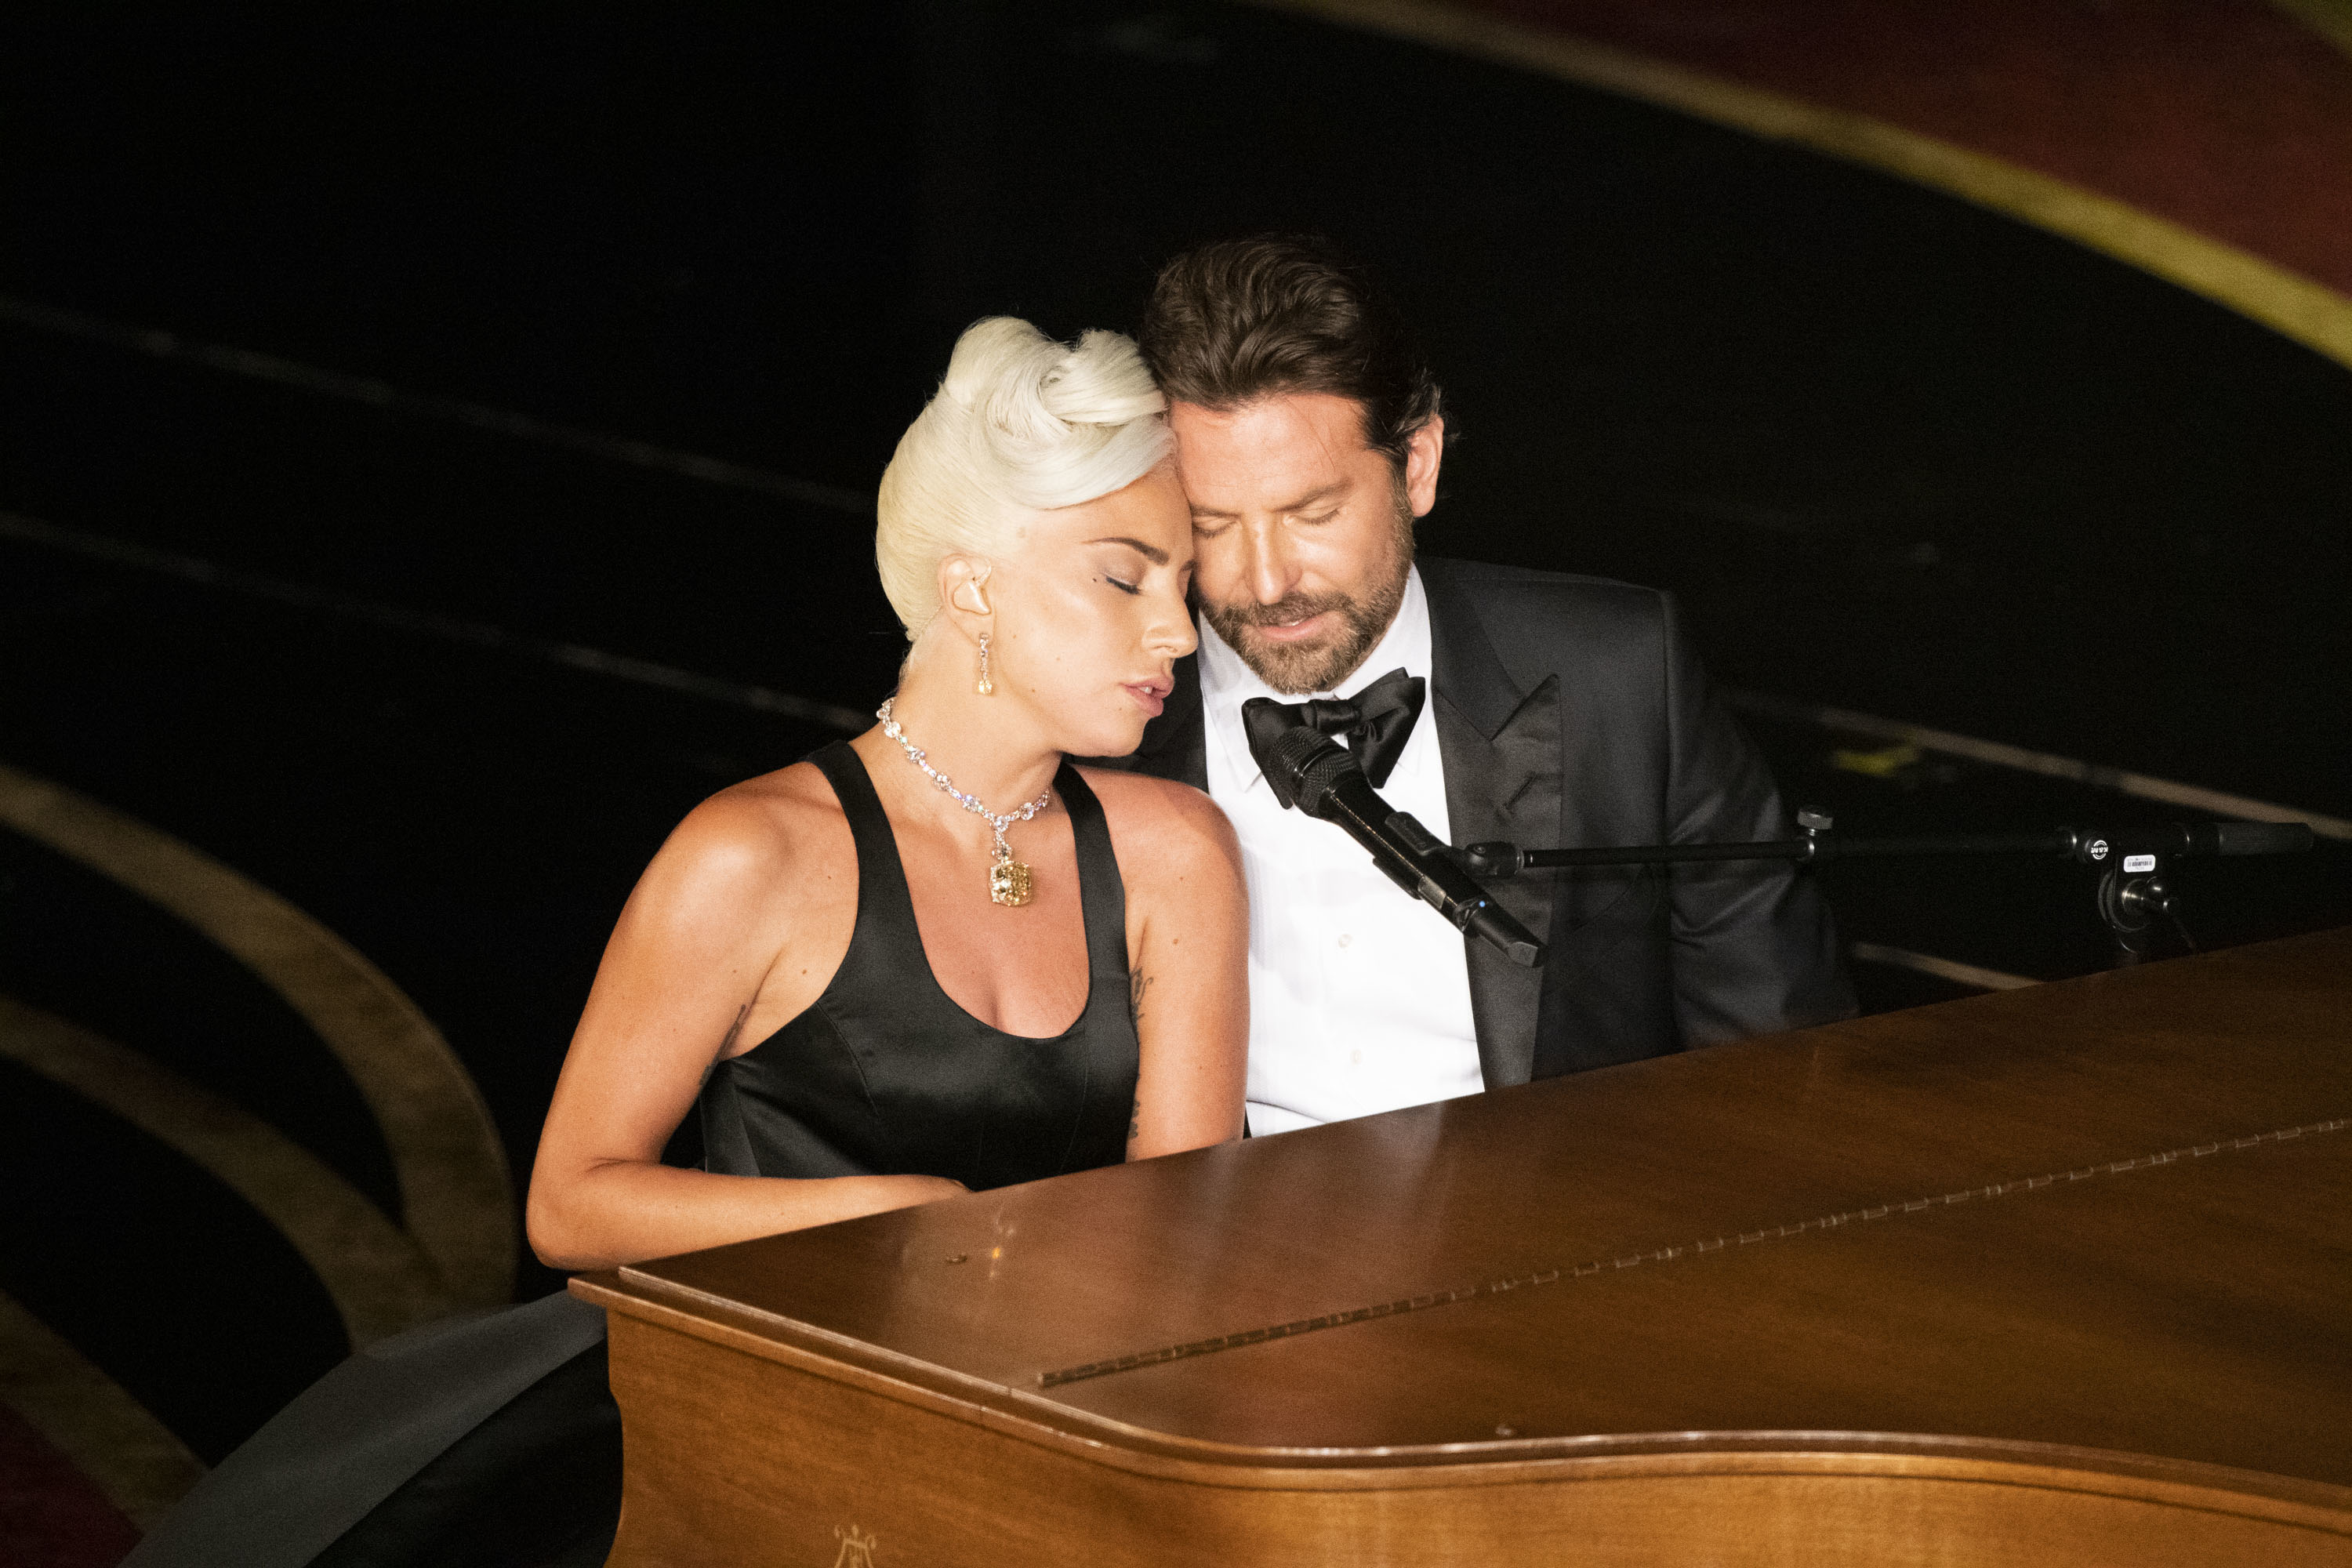 him and lady gaga singing at a piano